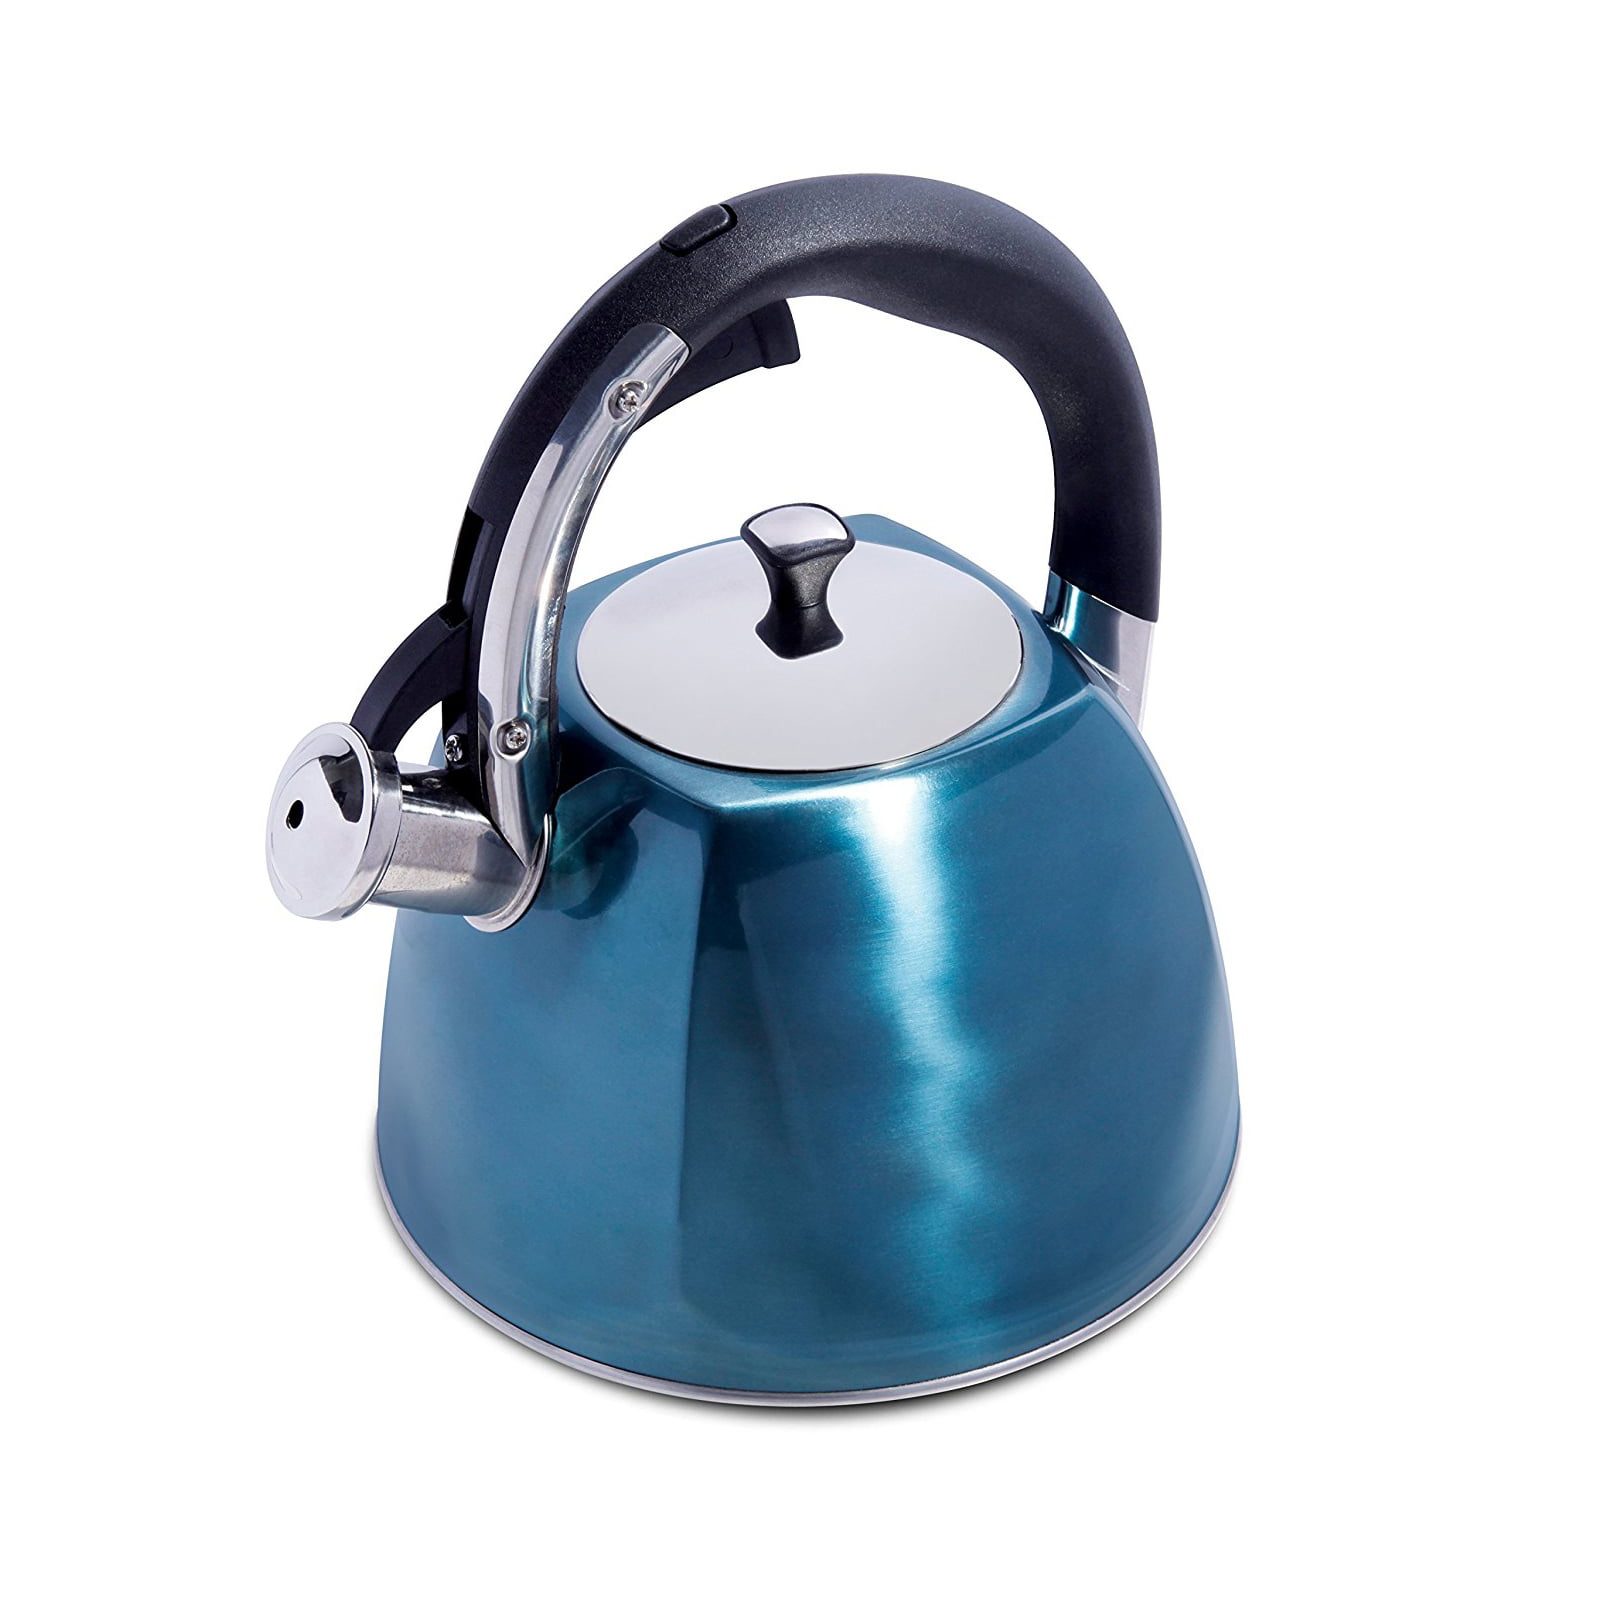 Stainless Steel Whistling Teapot 2.5 Liter Turquoise Tea Kettle 